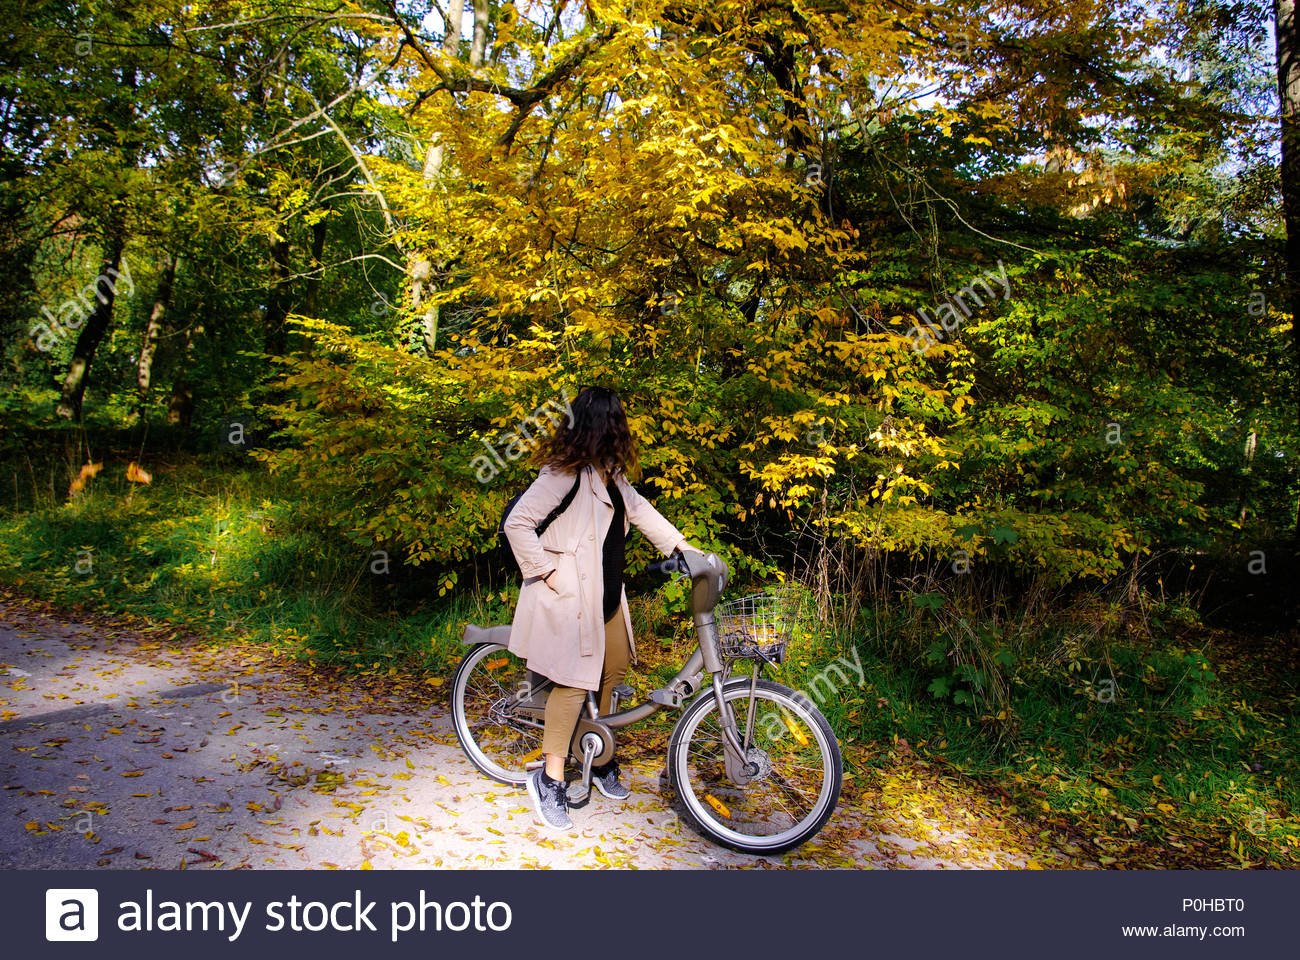 bicycle ride at park de vincennes paris france P0HBT0